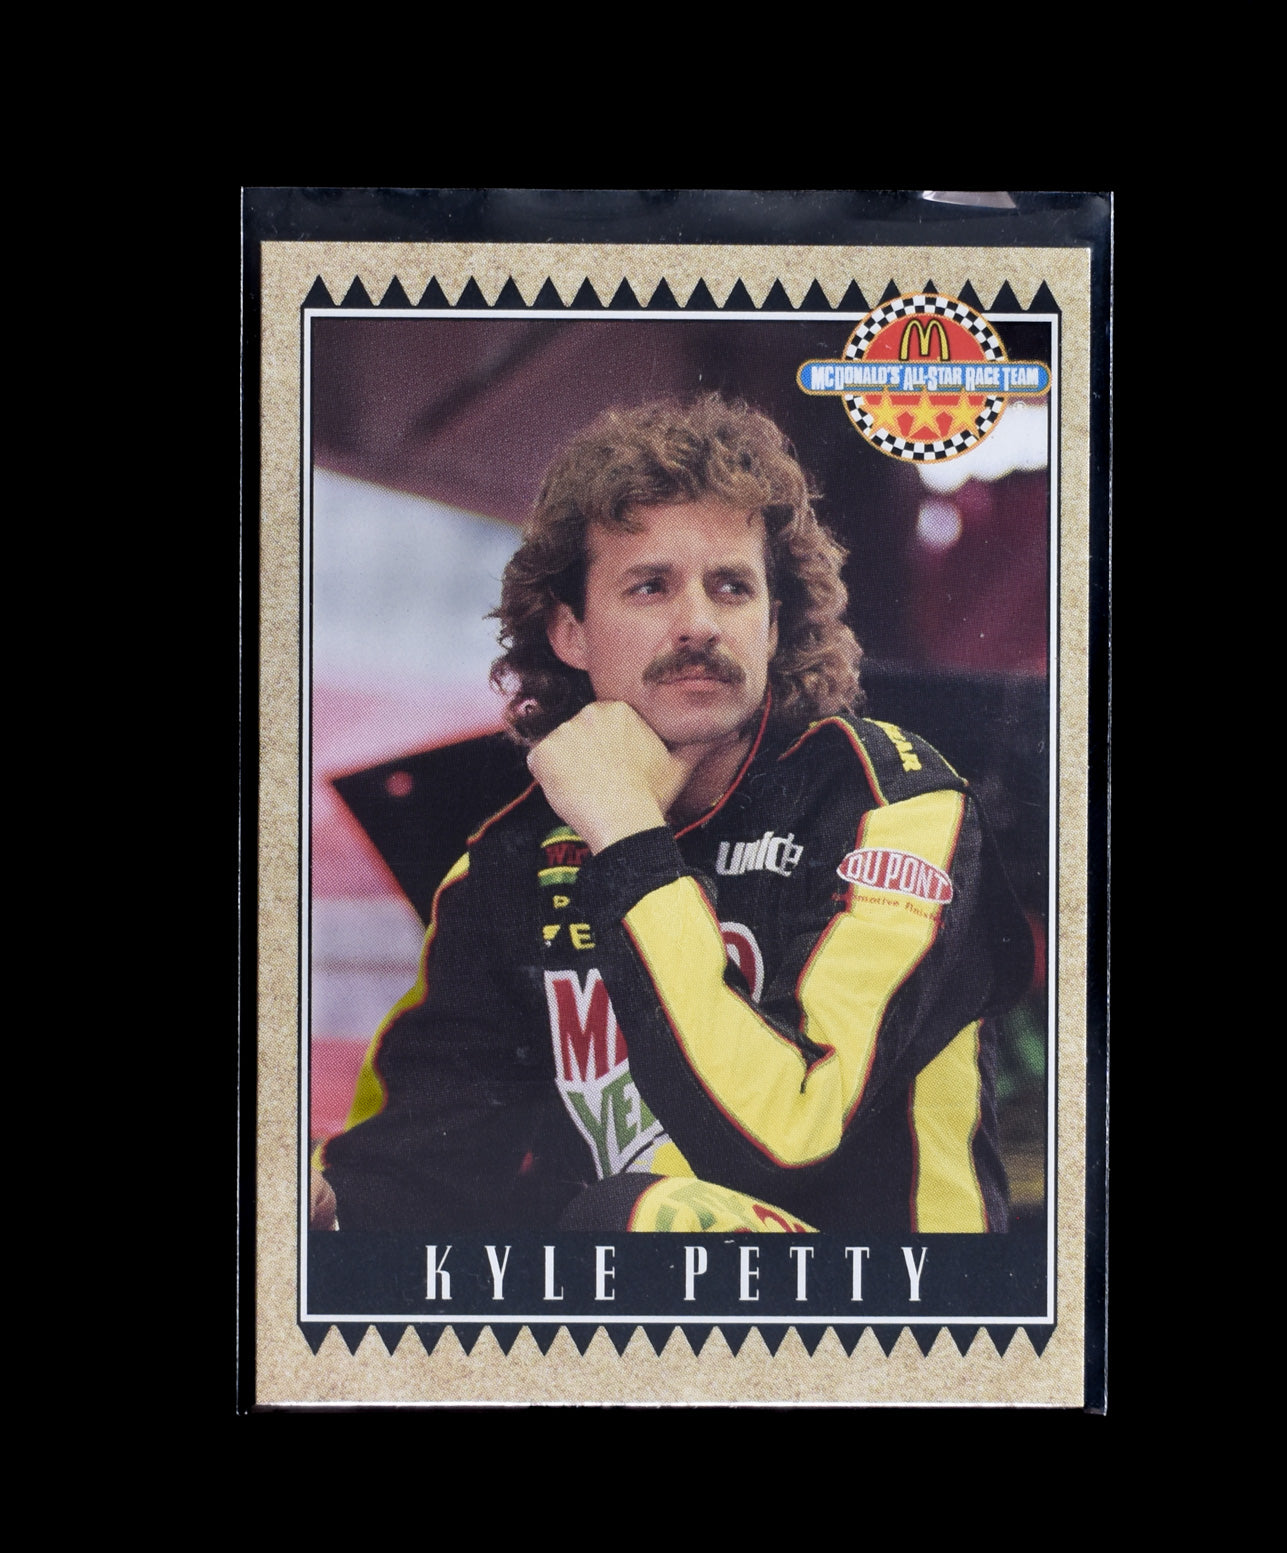 1992 Maxx Racing McDonalds All Star Race Team Card Kyle Petty 35